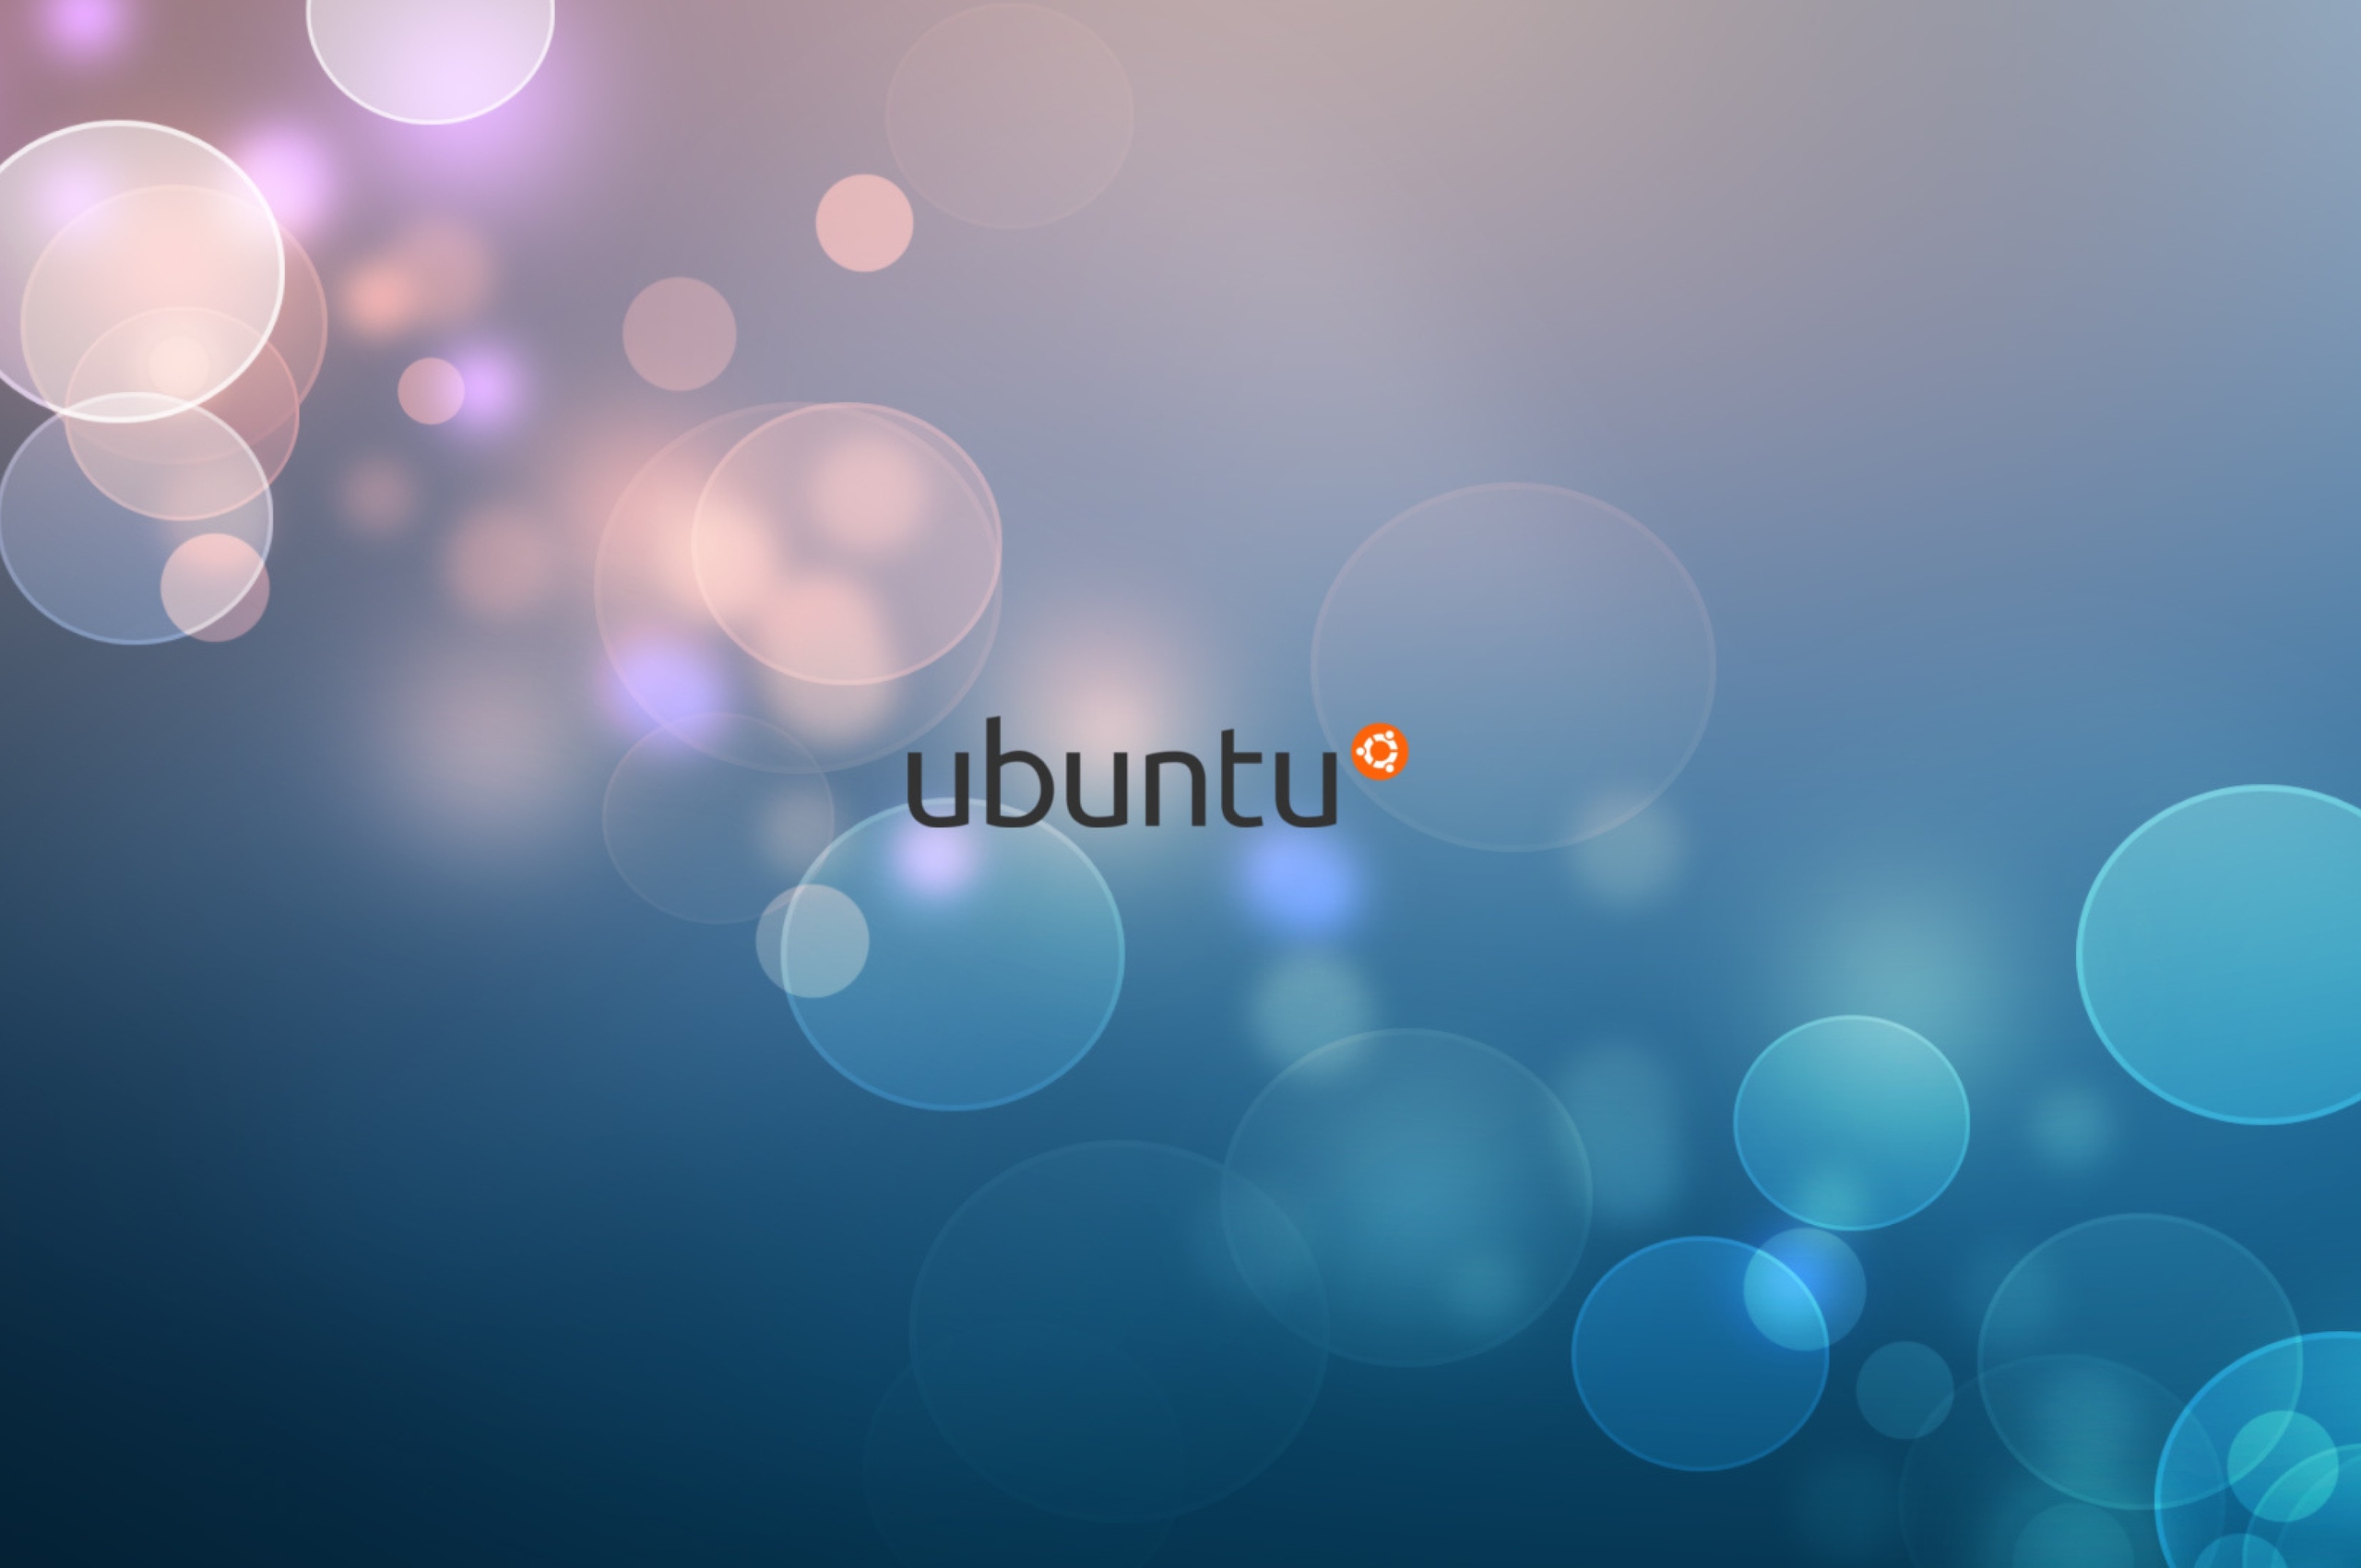 ubuntu-logo-2.jpg